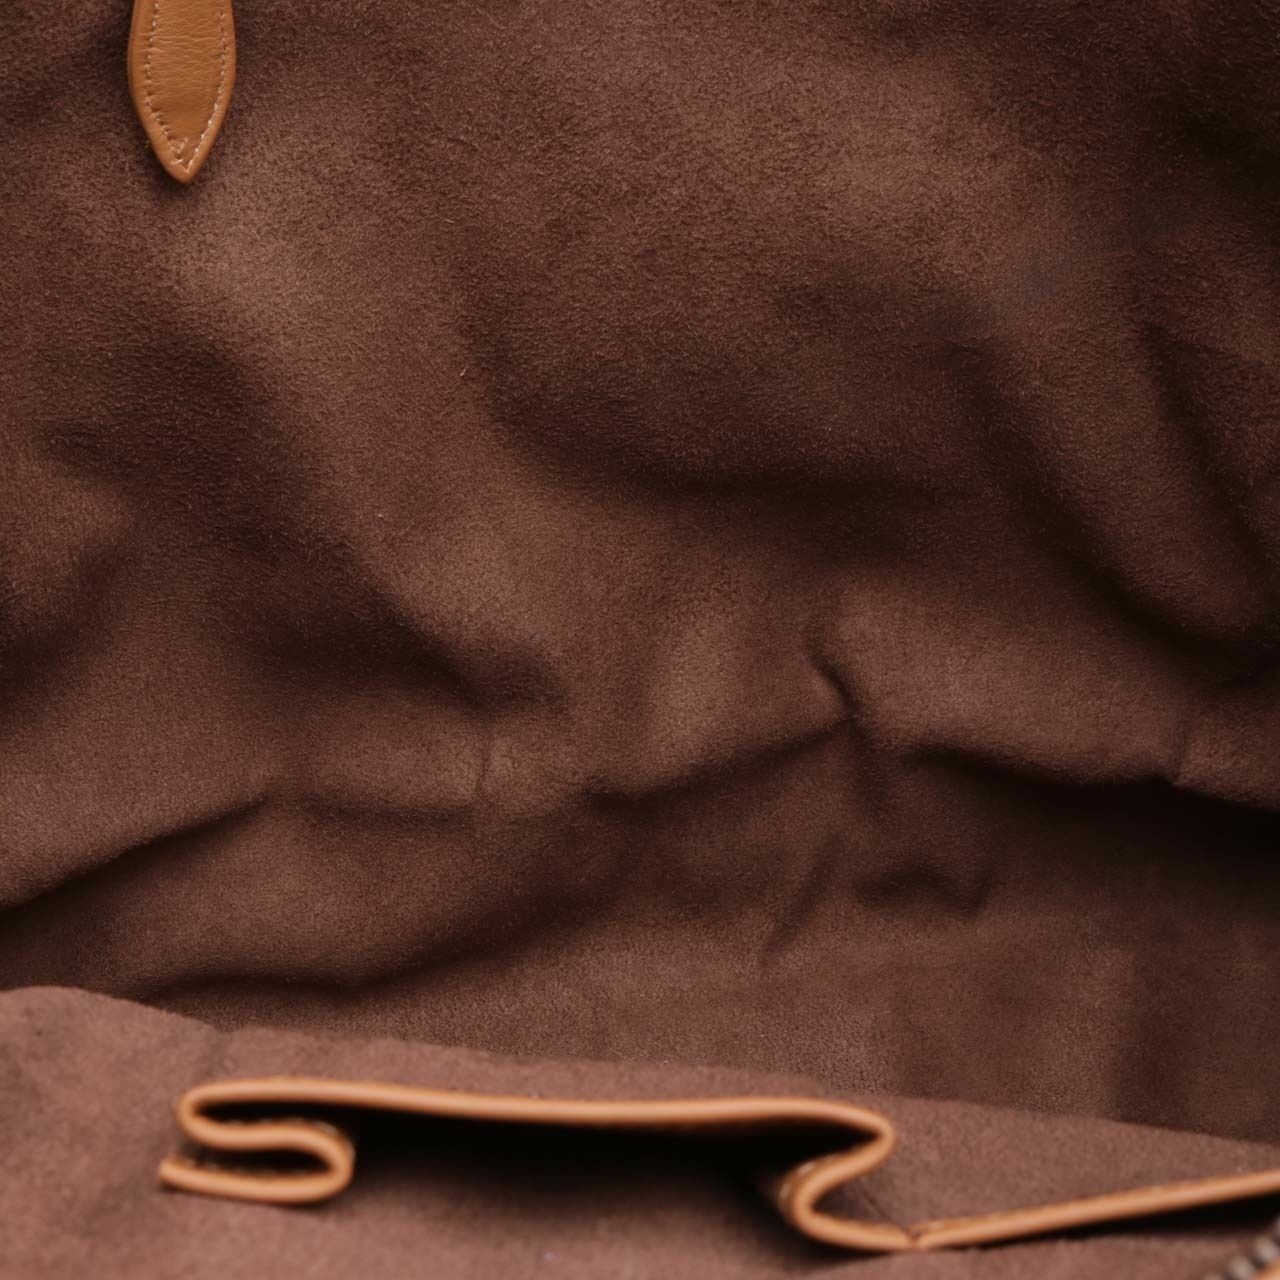 Pribumi Brown Patterned Tote Bag